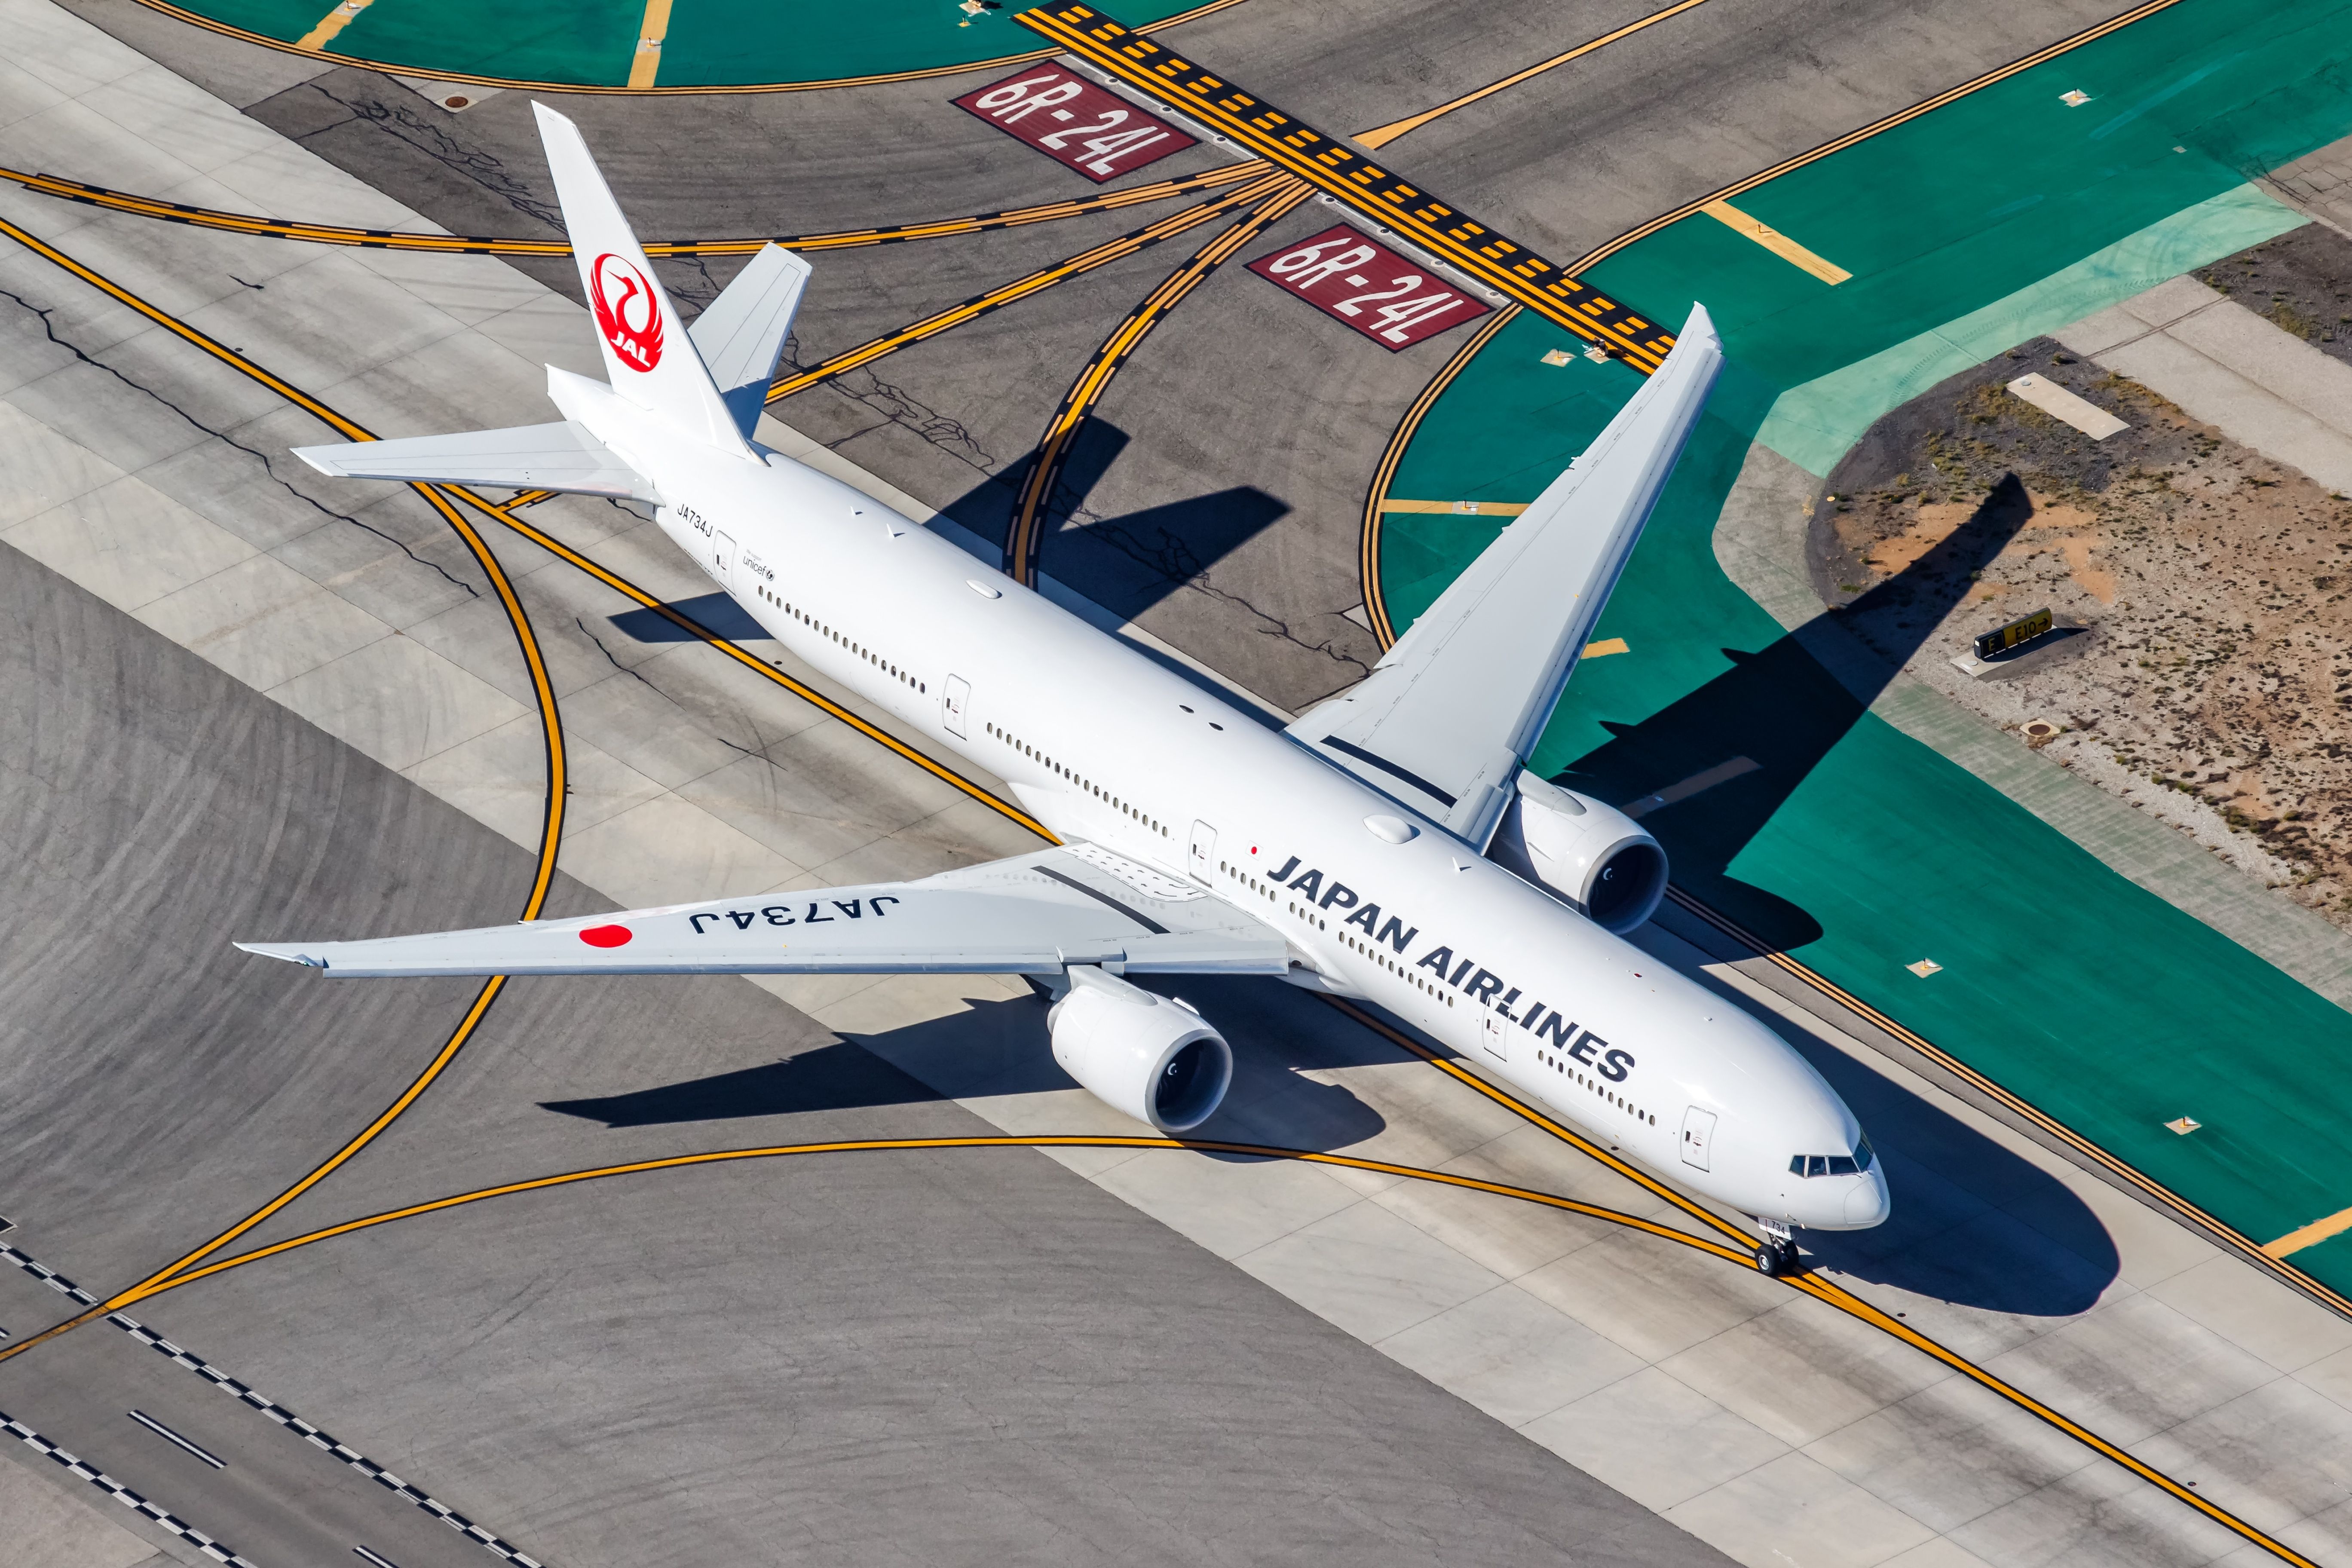 Japan Airlines Boeing 777-300ER